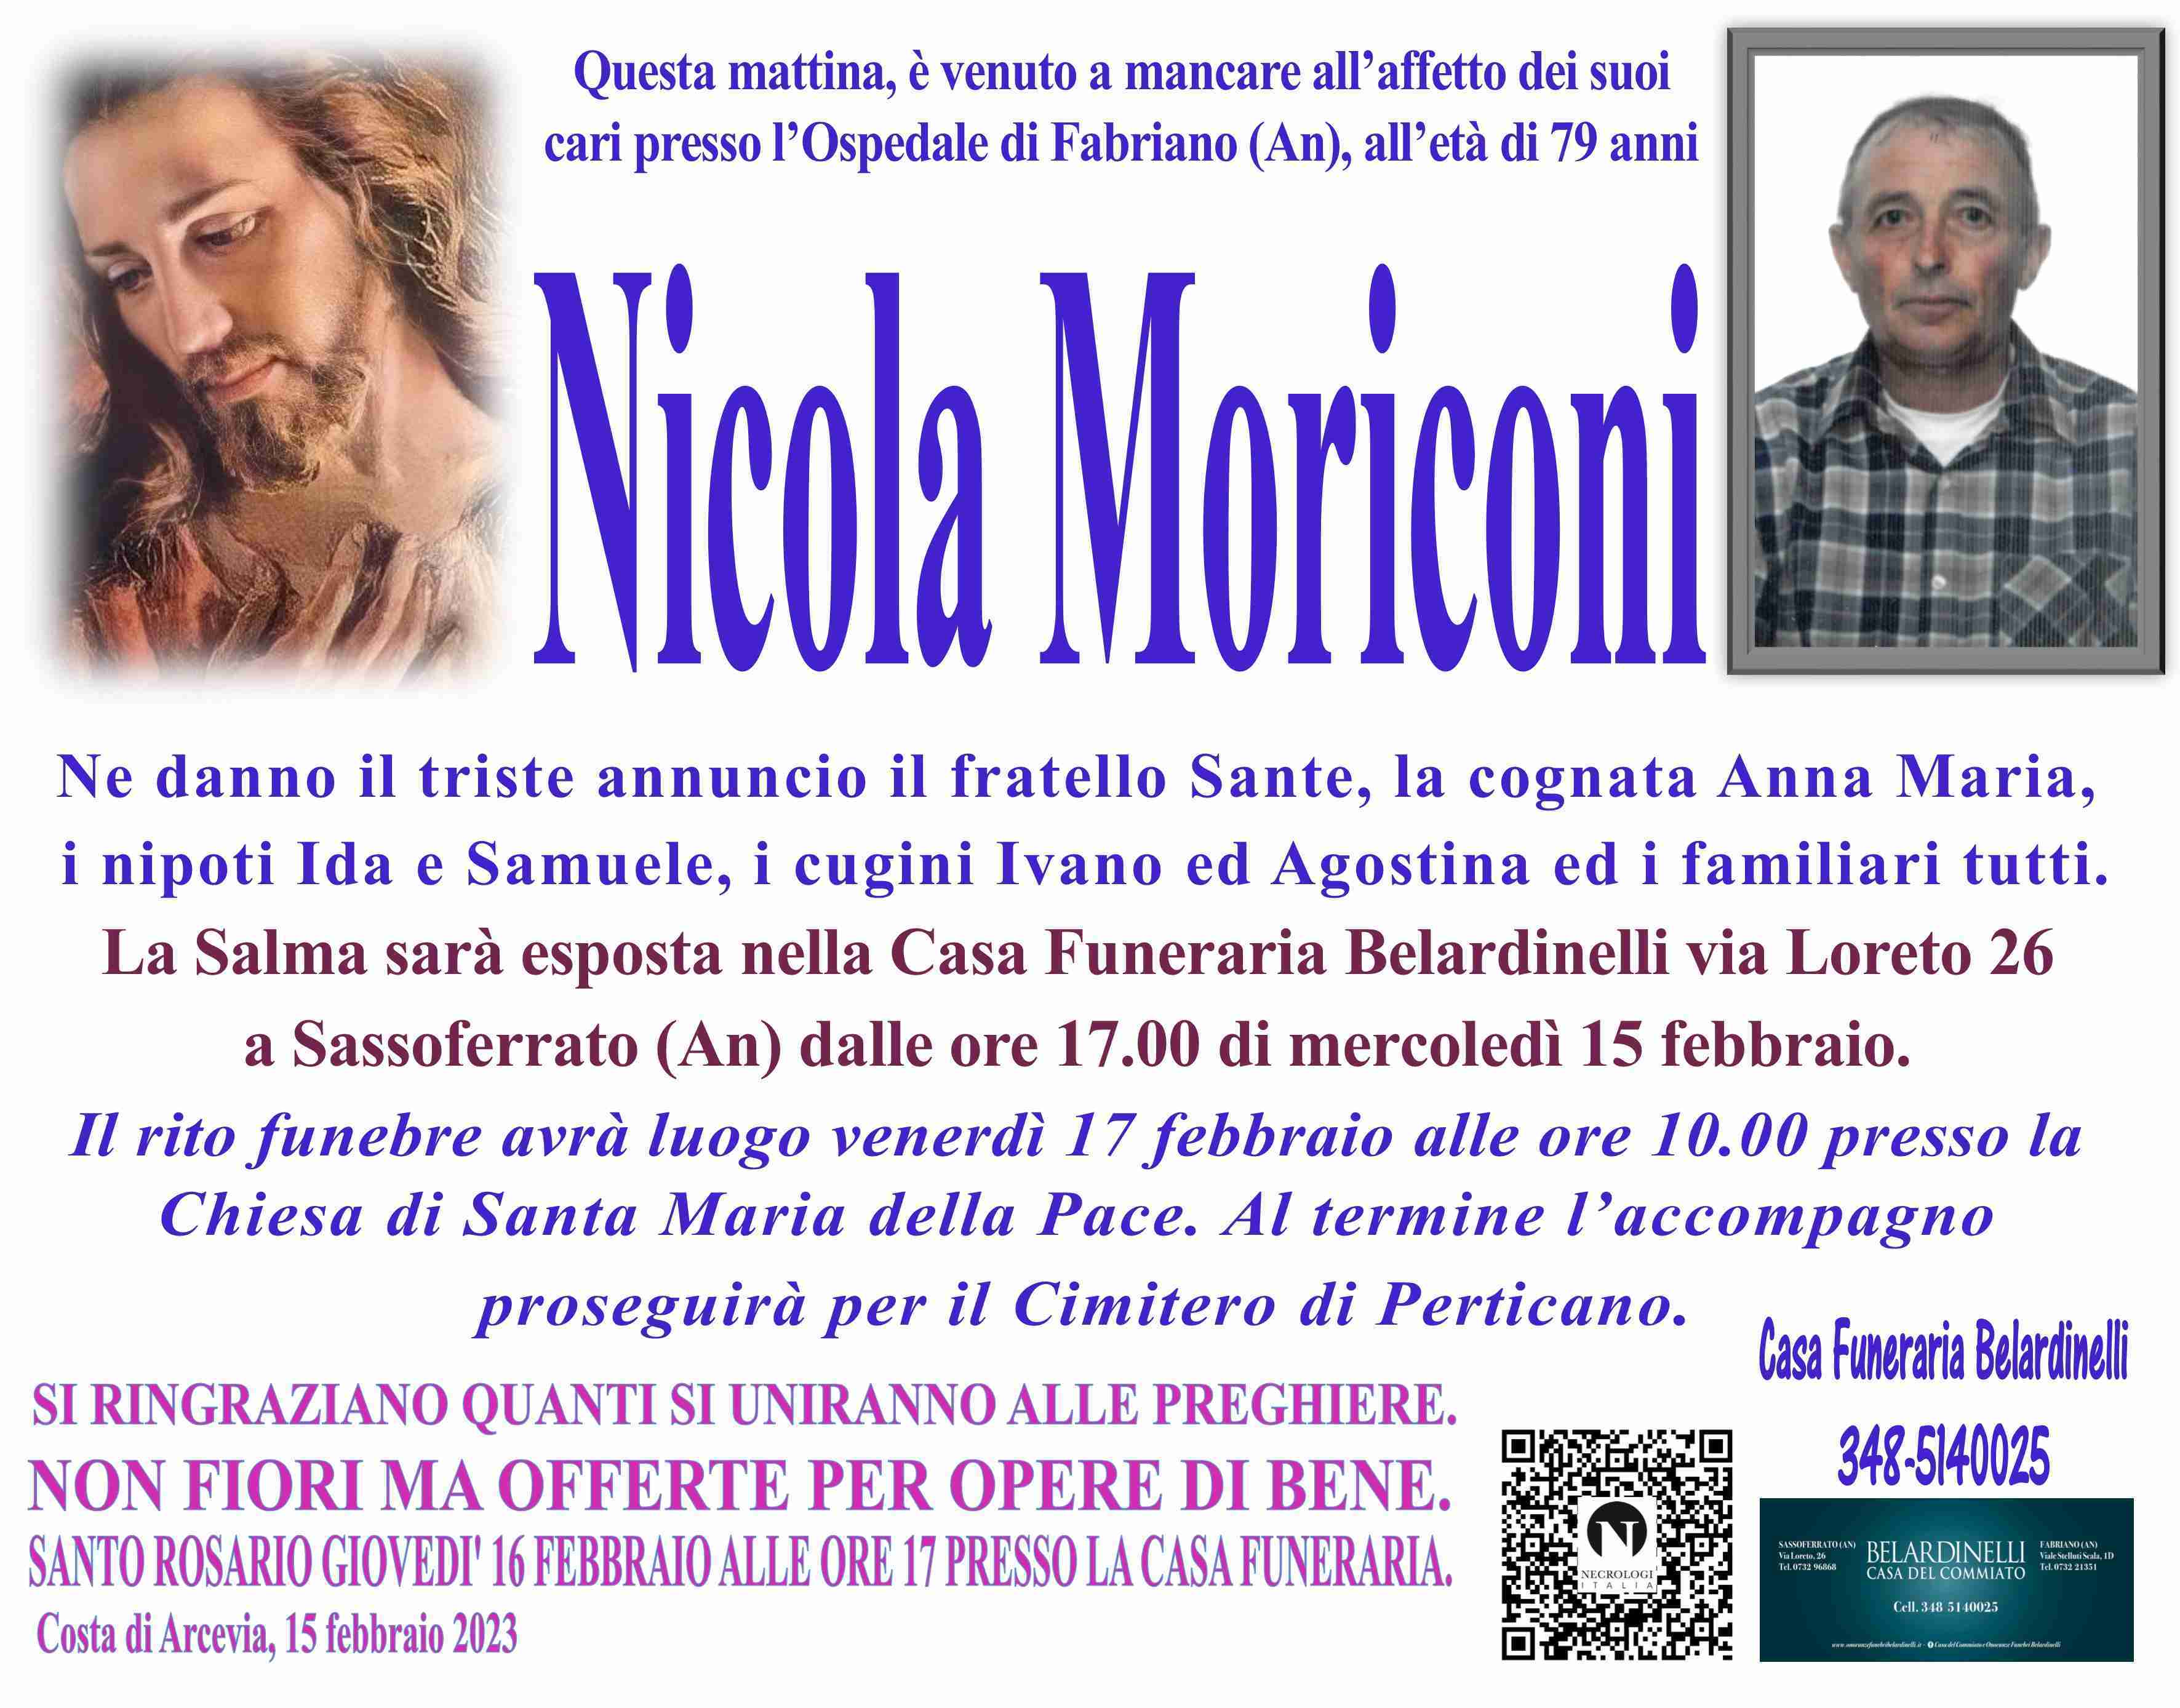 Nicola Moriconi